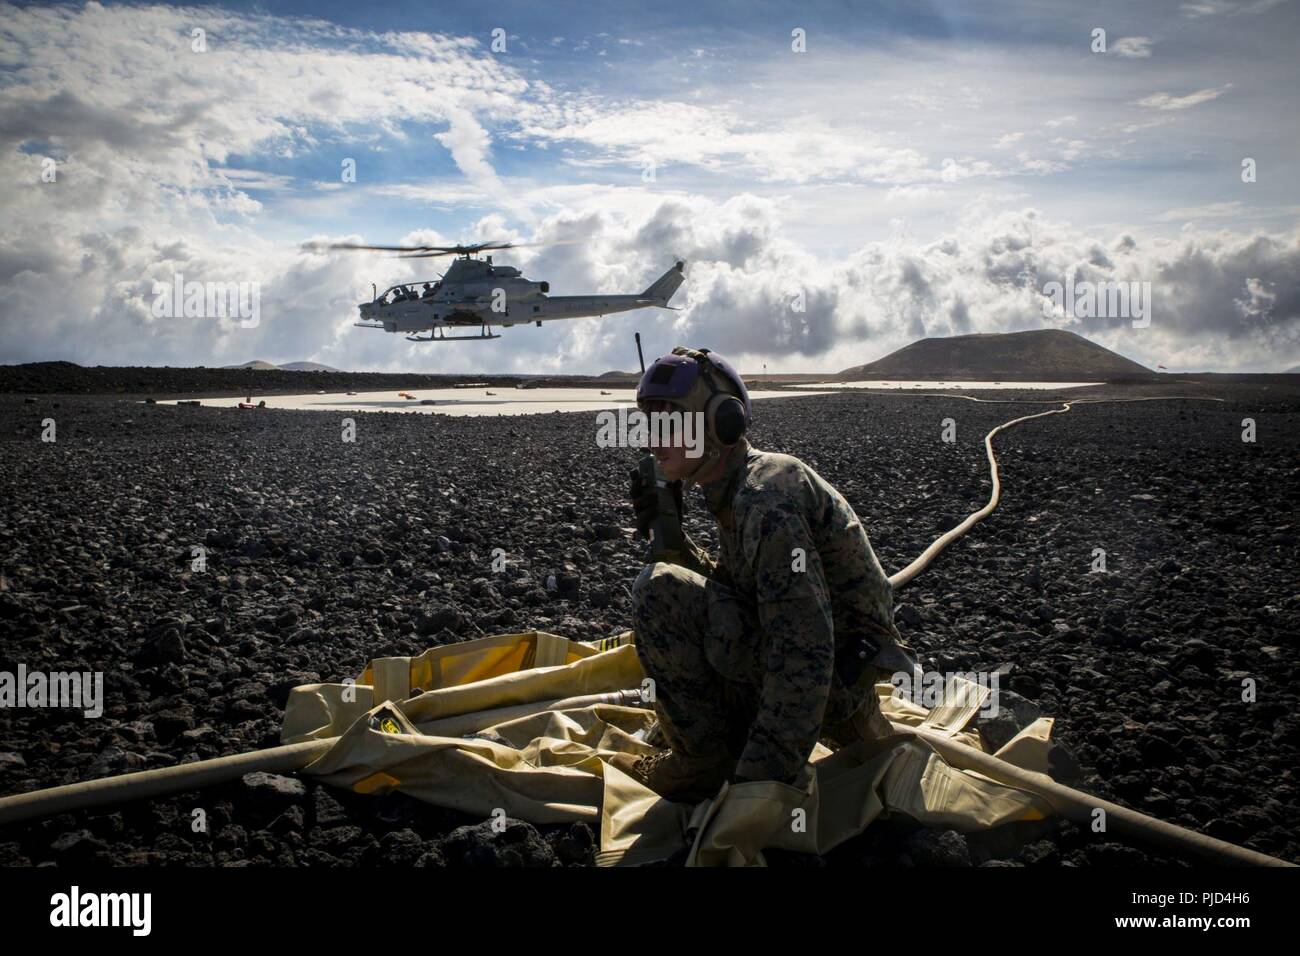 POHAKULOA TRAINING AREA, California (18. Juli 2018) US Marine Cpl. Michael Michehl, eine Linie noncommissioned Officer mit Marine Wing Support Abteilung 24, steuert die Vorwärts Bewaffnung und Betankung point Operationen nach dem Tanken eine Bell AH-1W Super Cobra bei einem Feldversuch für die Auslandseinsätze Mobile Kraftstoff Additization Fähigkeit System als Teil der Felge des Pazifiks (Rimpac) Übung an Pohakuloa Training Area, California, 18. Juli 2018. RIMPAC bietet hochwertige Ausbildung für Task-organisiert, leistungsfähigen Marine Air-Ground Task Force und erhöht die kritische Reaktion auf Krisen Fähigkeit der US Marine Stockfoto